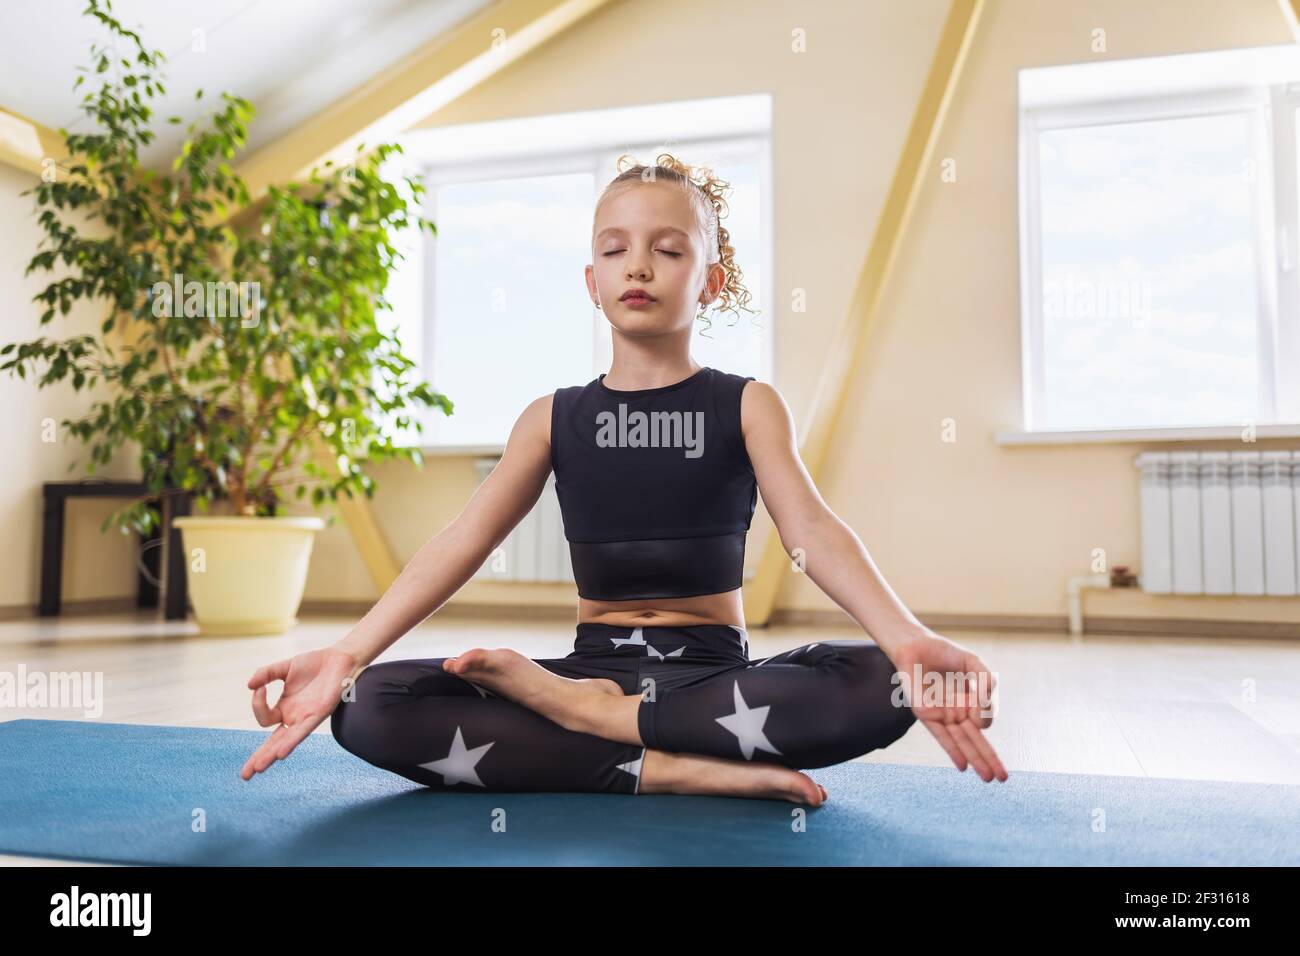 Une petite fille de vêtements de sport, pratiquant le yoga, est engagée dans la méditation assise dans la position lotus dans la salle. Concept de yoga pour enfants. Banque D'Images